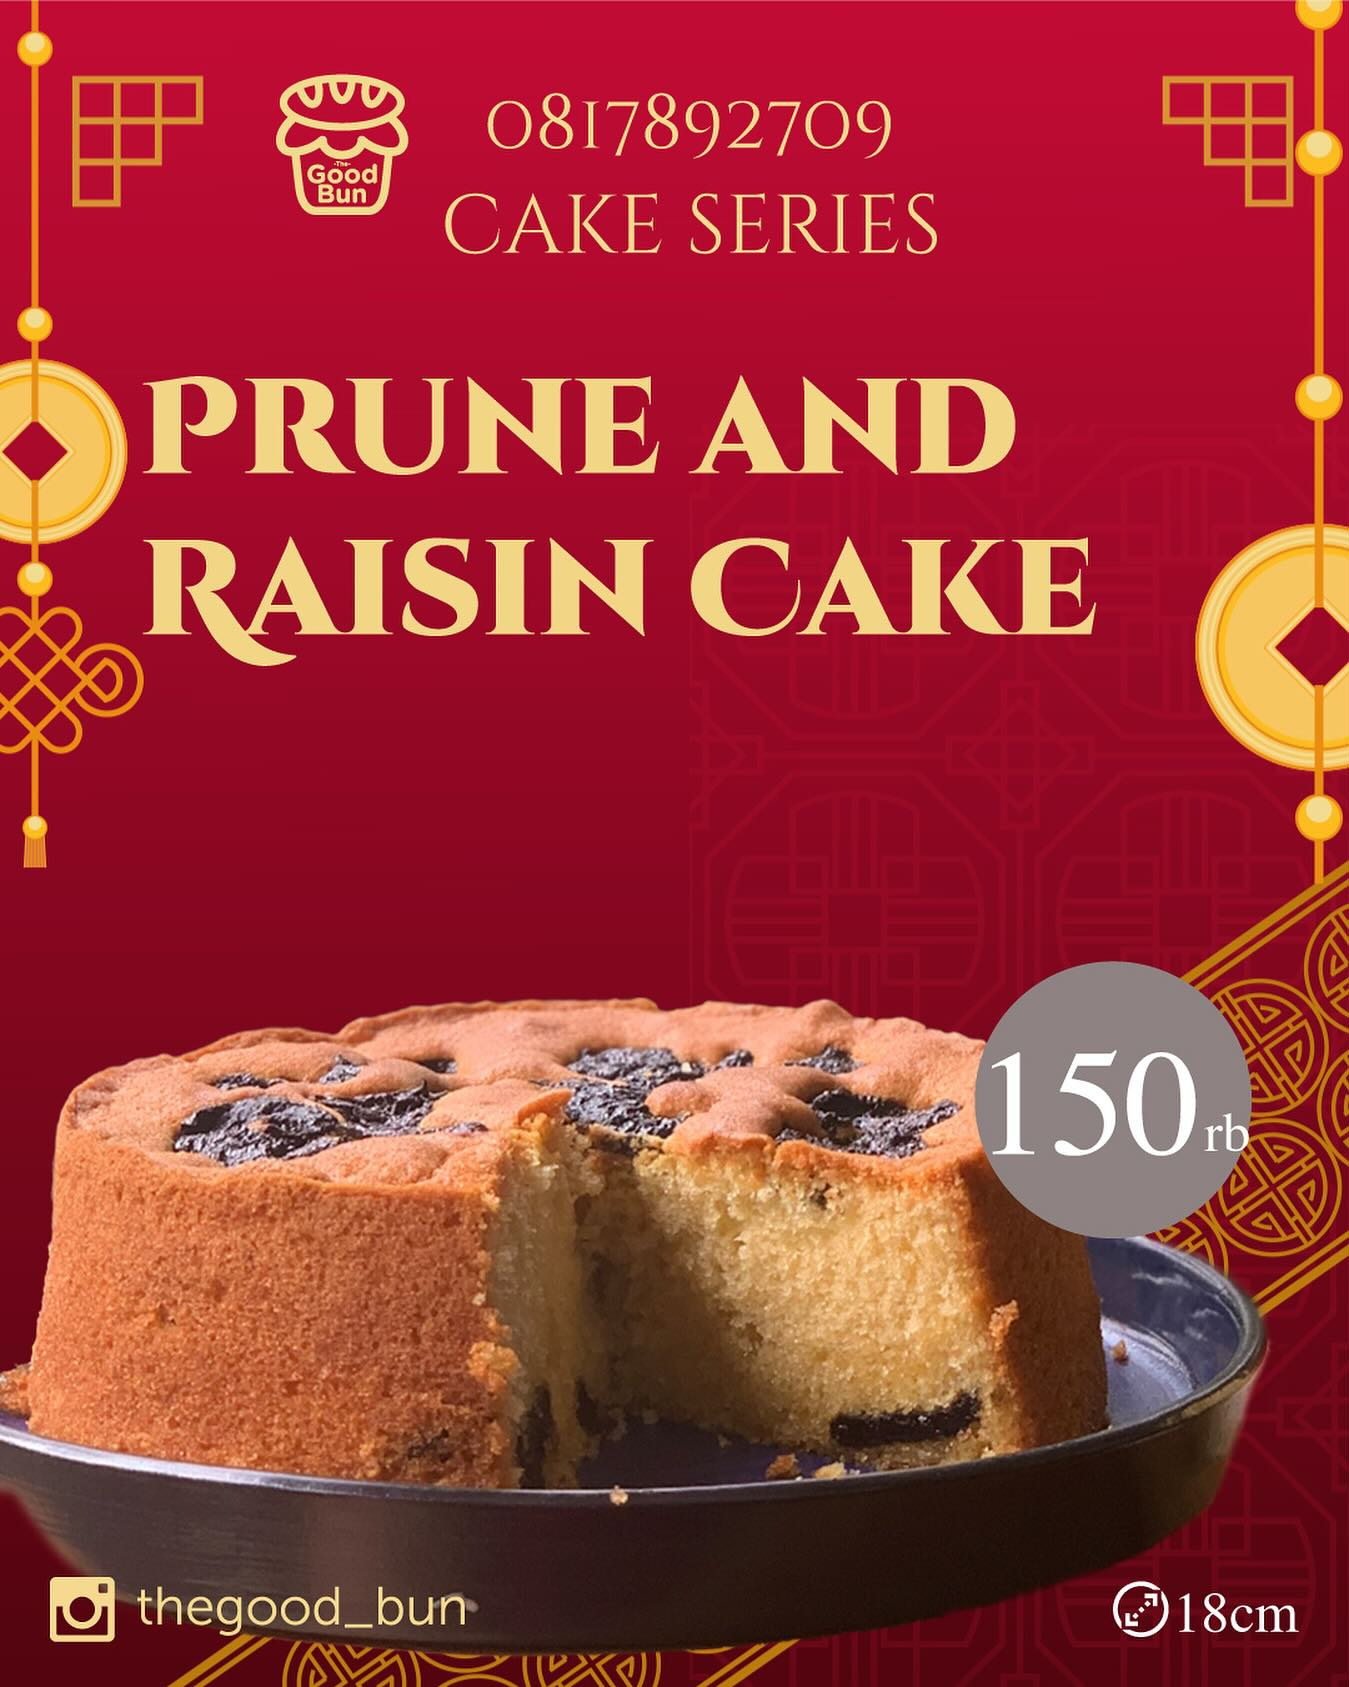 Prune and Raisin Cake